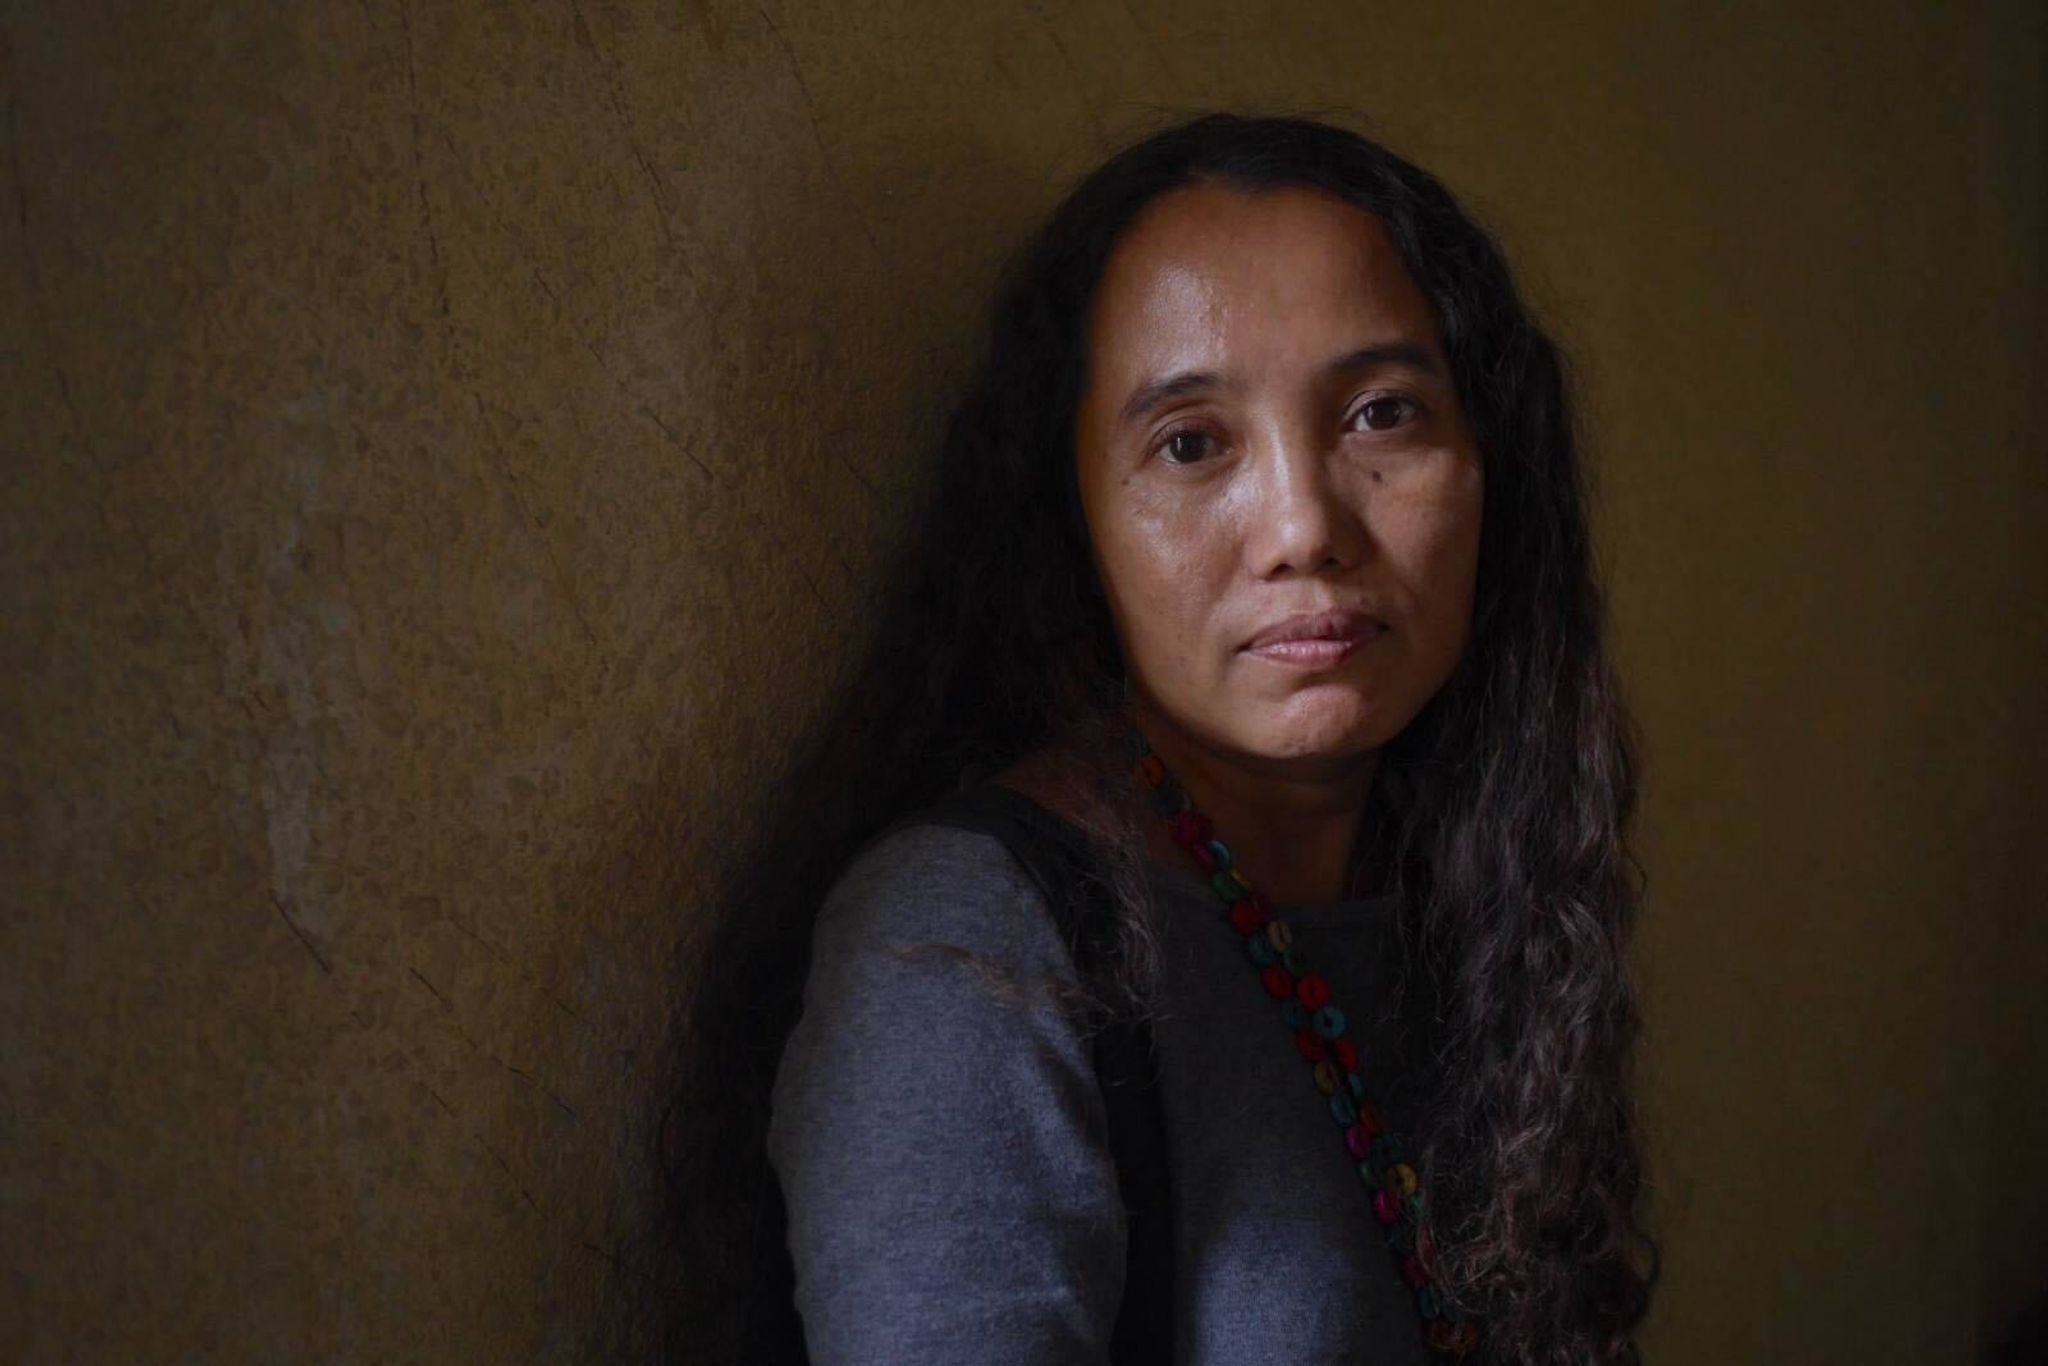 Die preisgekrönte Dokumentarfilmerin Shin Daewe ist in Myanmar zu lebenslanger Haft verurteilt worden.